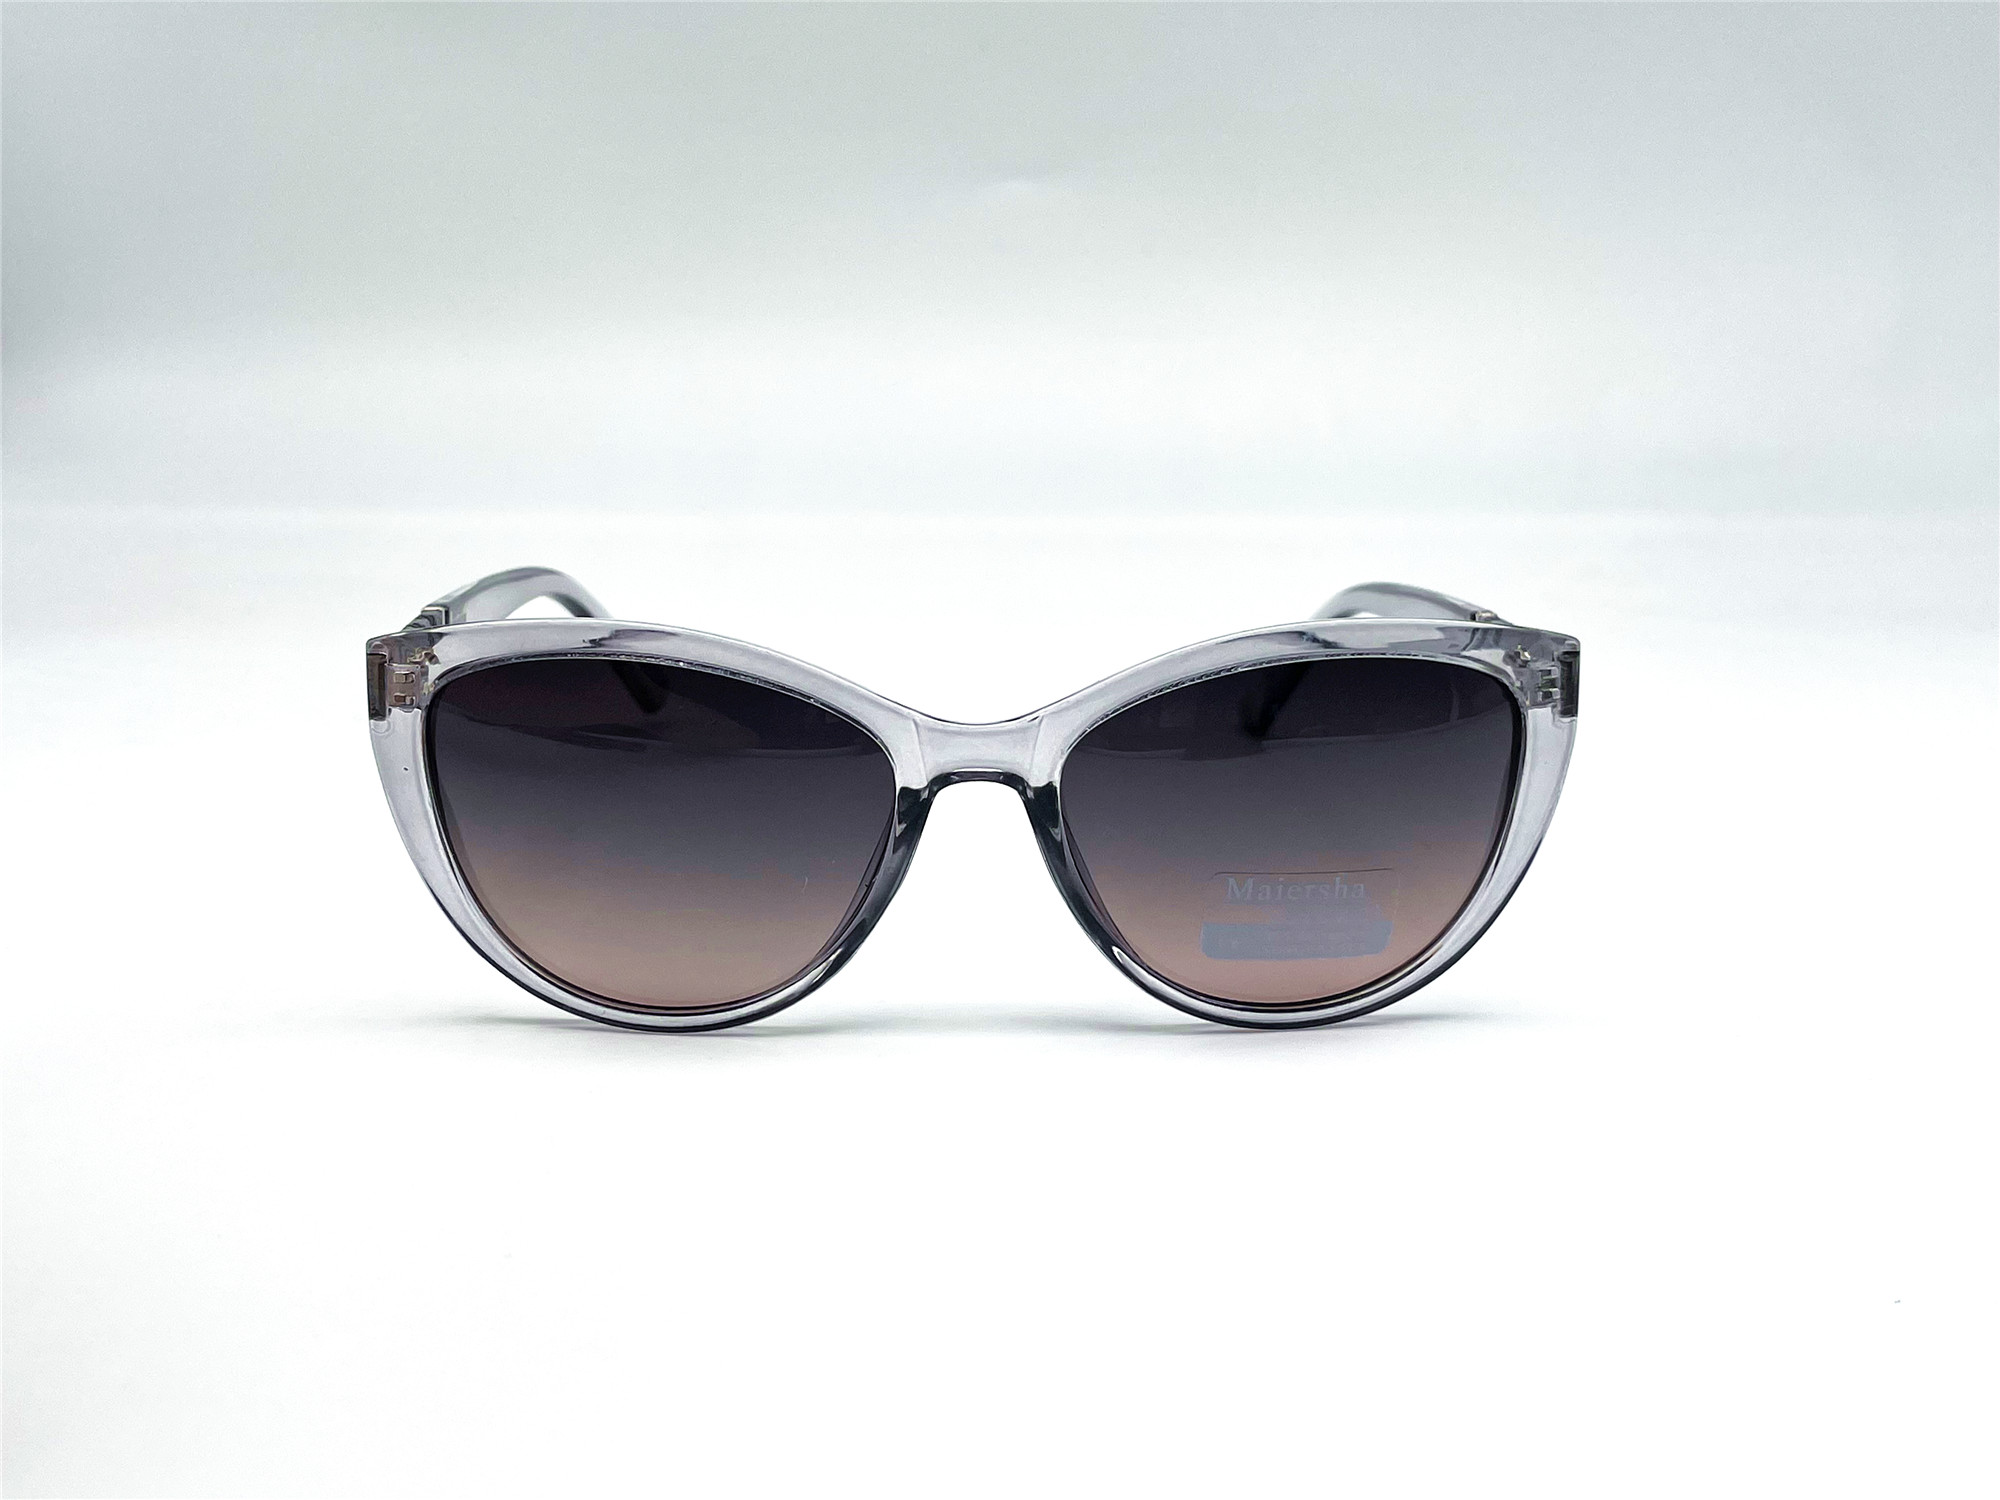  Солнцезащитные очки картинка Женские Maiersha Polarized Круглые 03806-C4-33 